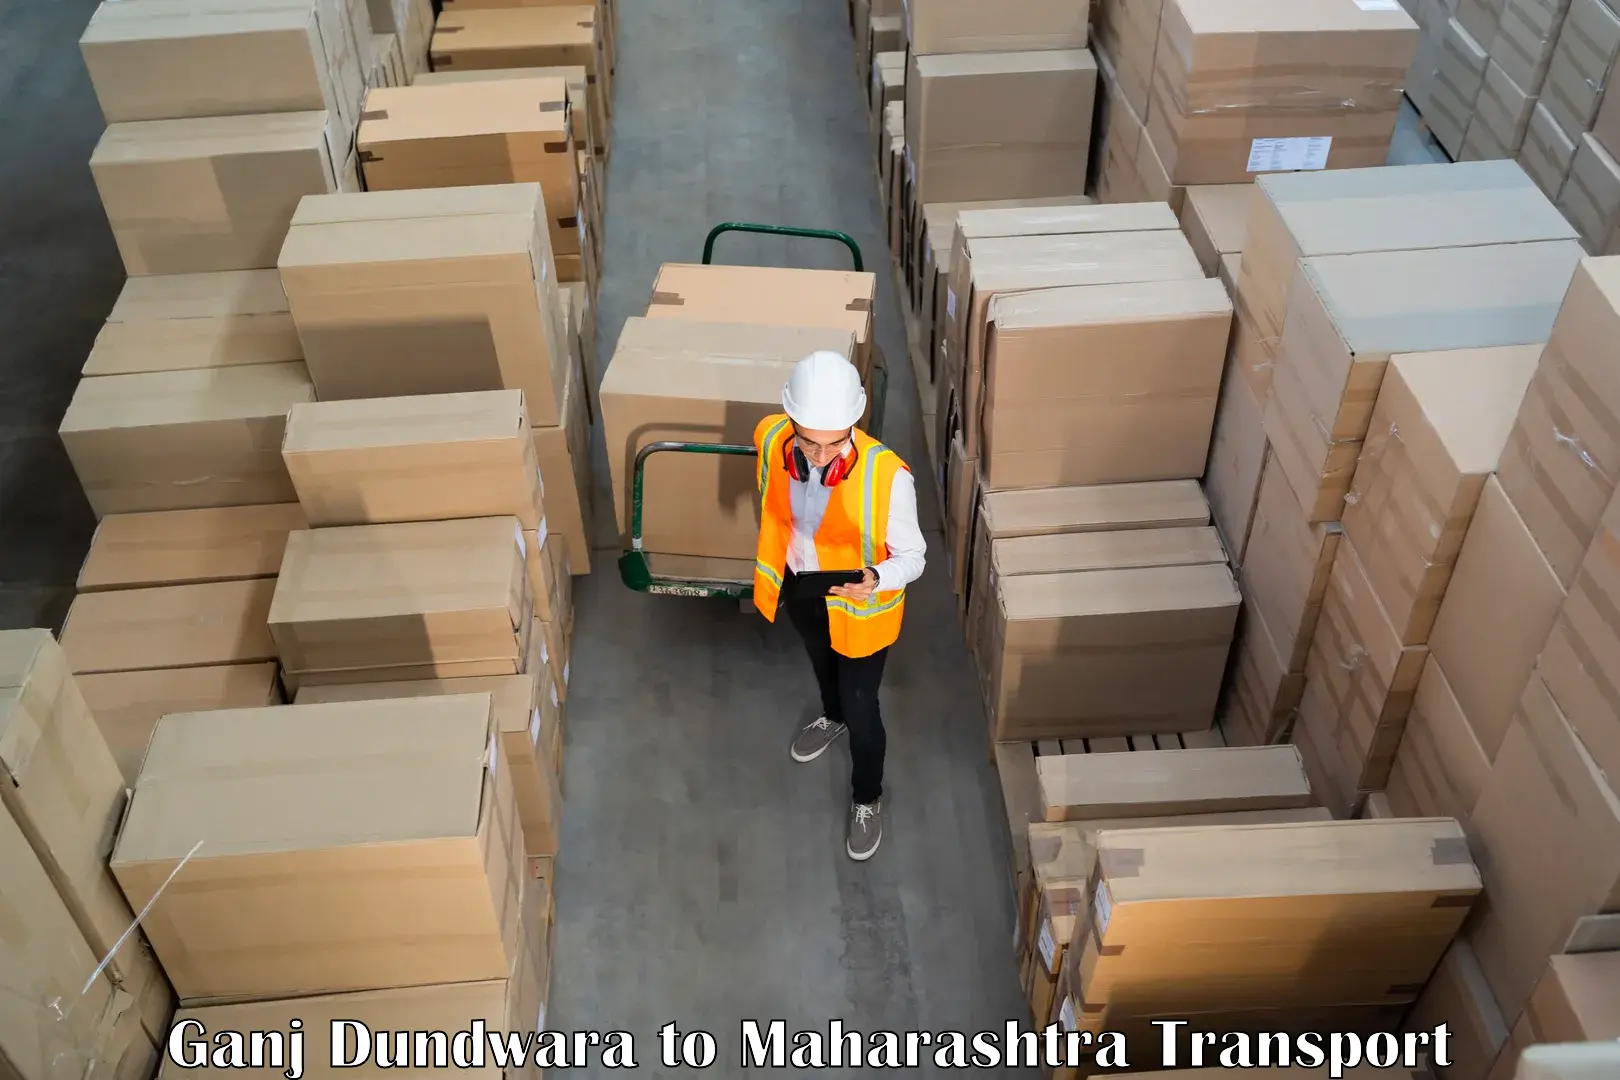 Commercial transport service Ganj Dundwara to Chinchbunder